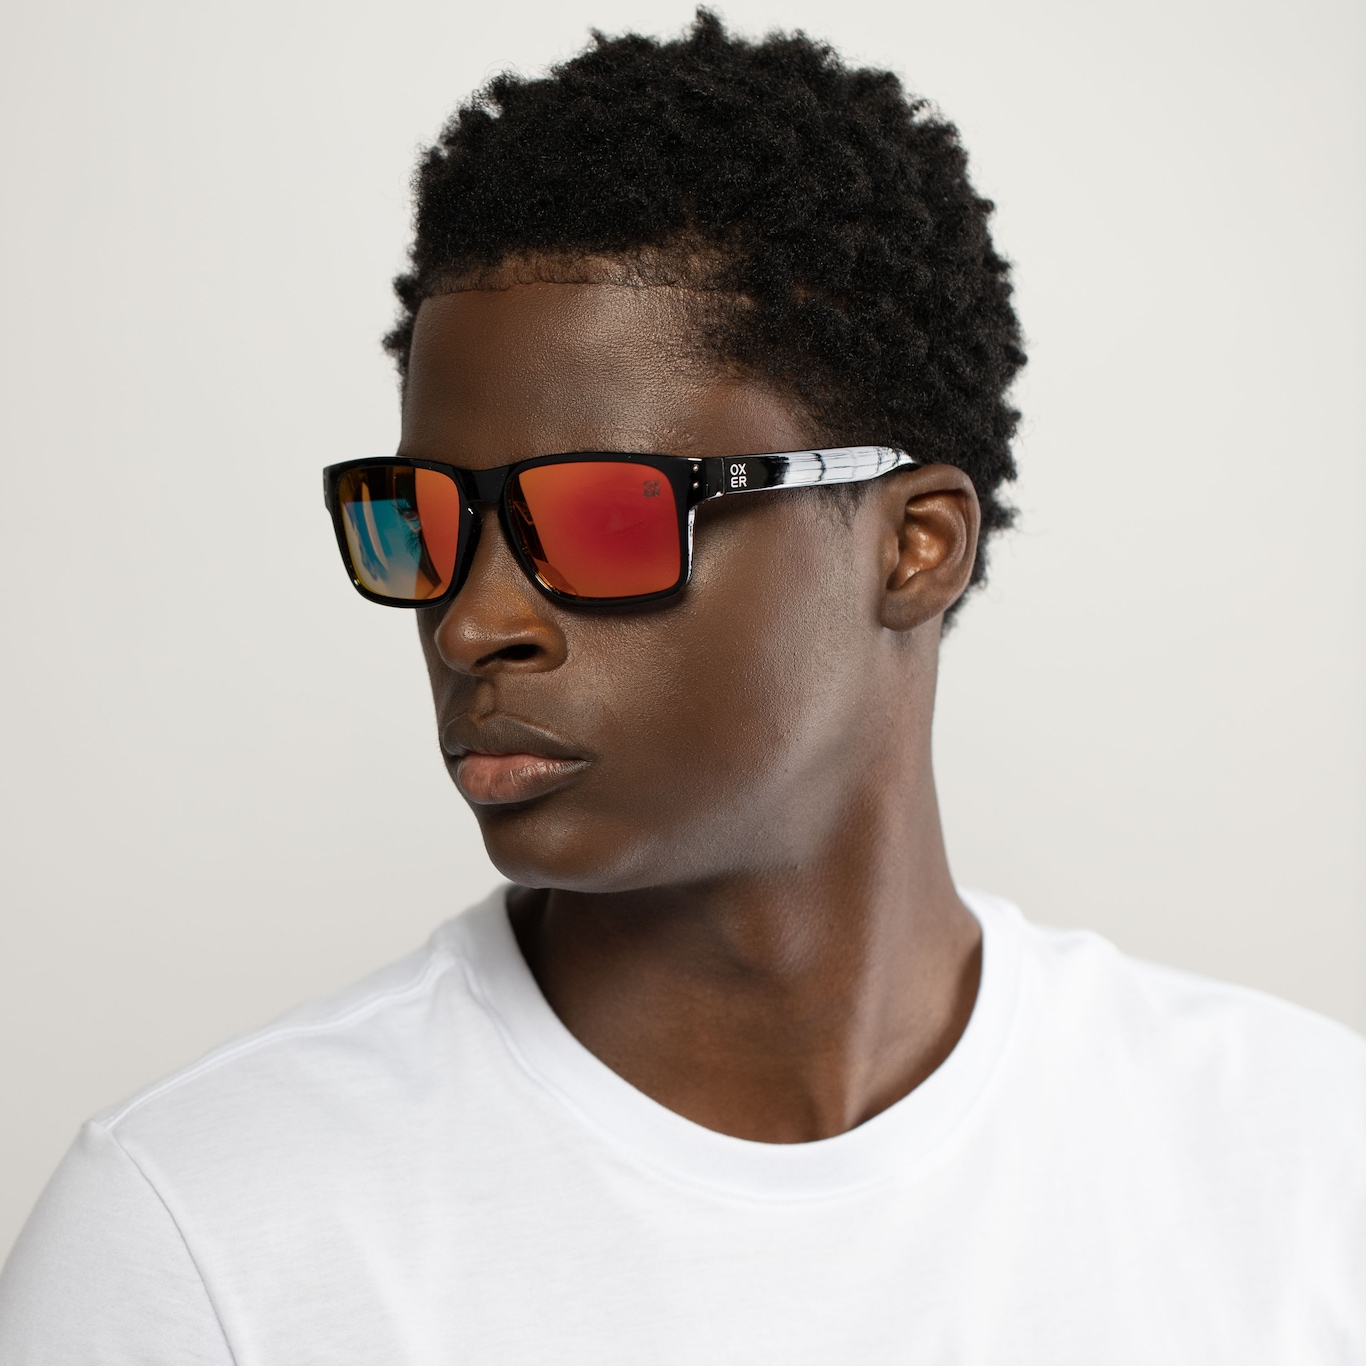 Loja oficial Oakley®: Óculos de sol, Óculos de Proteção e Vestuário